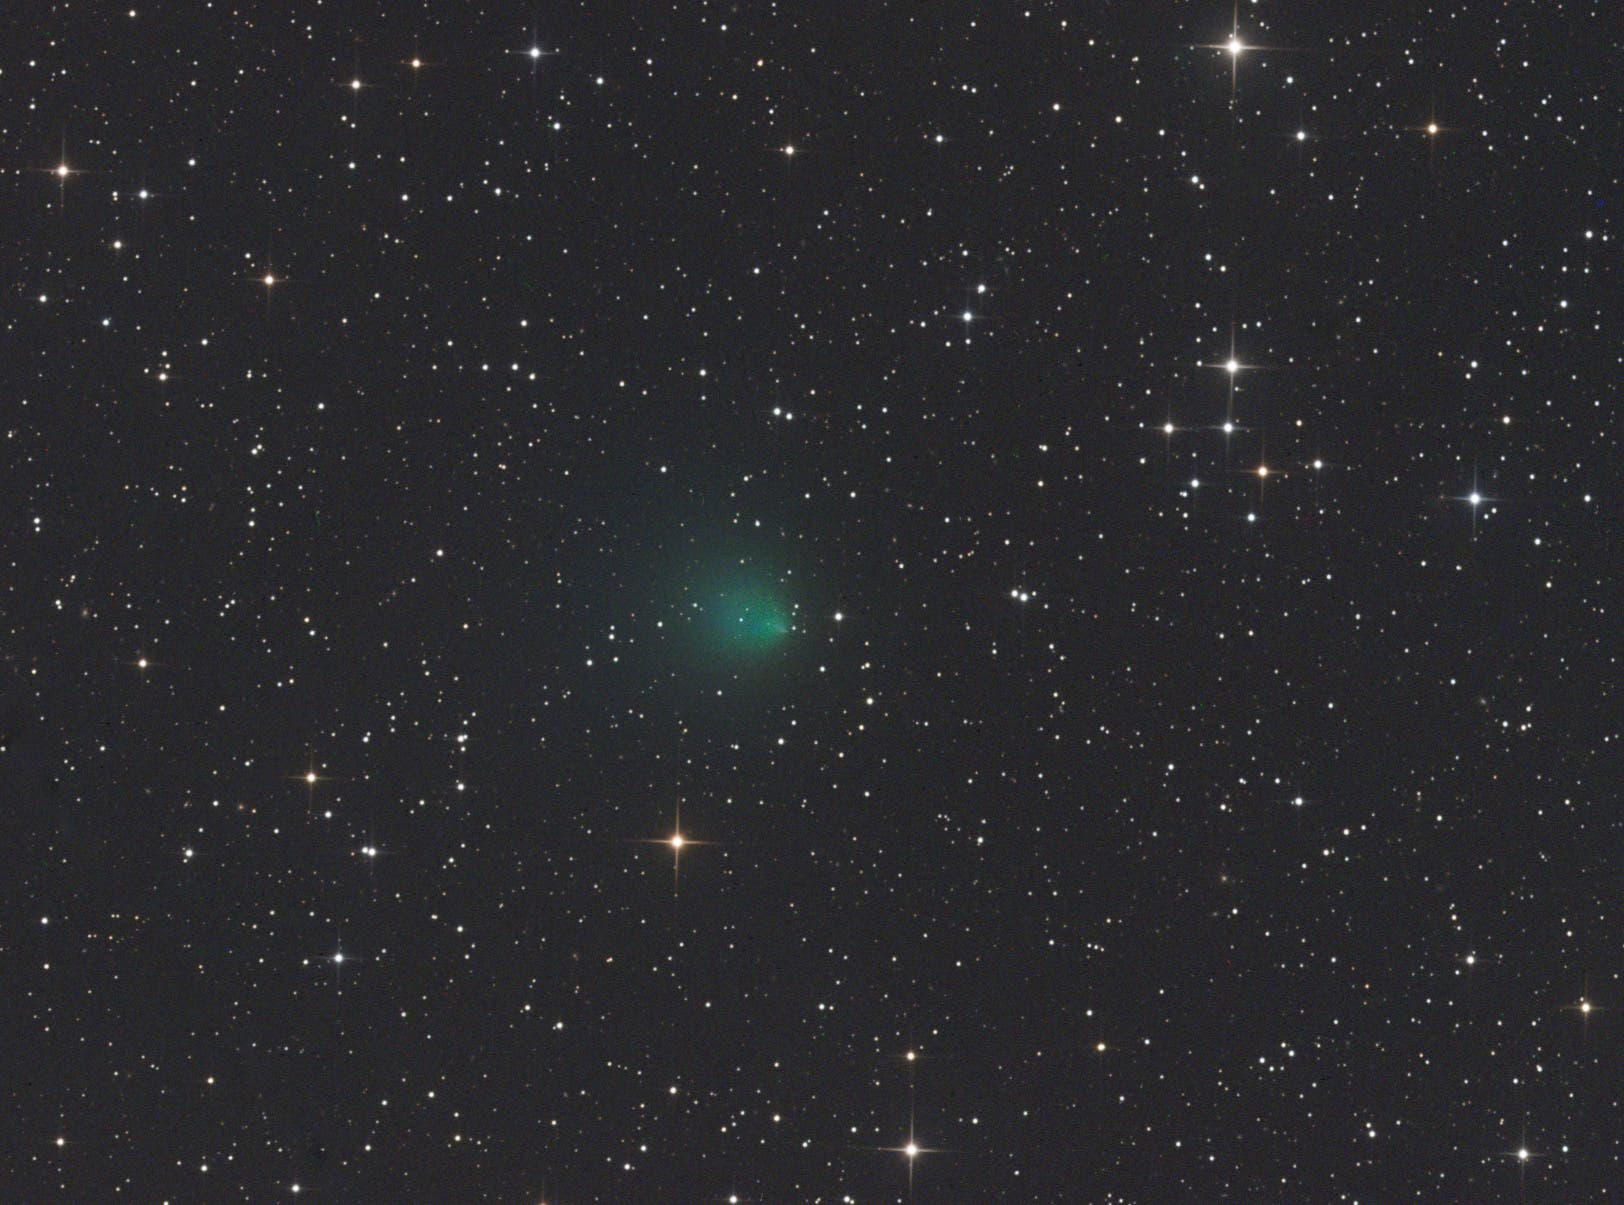 Komet 2P/Encke